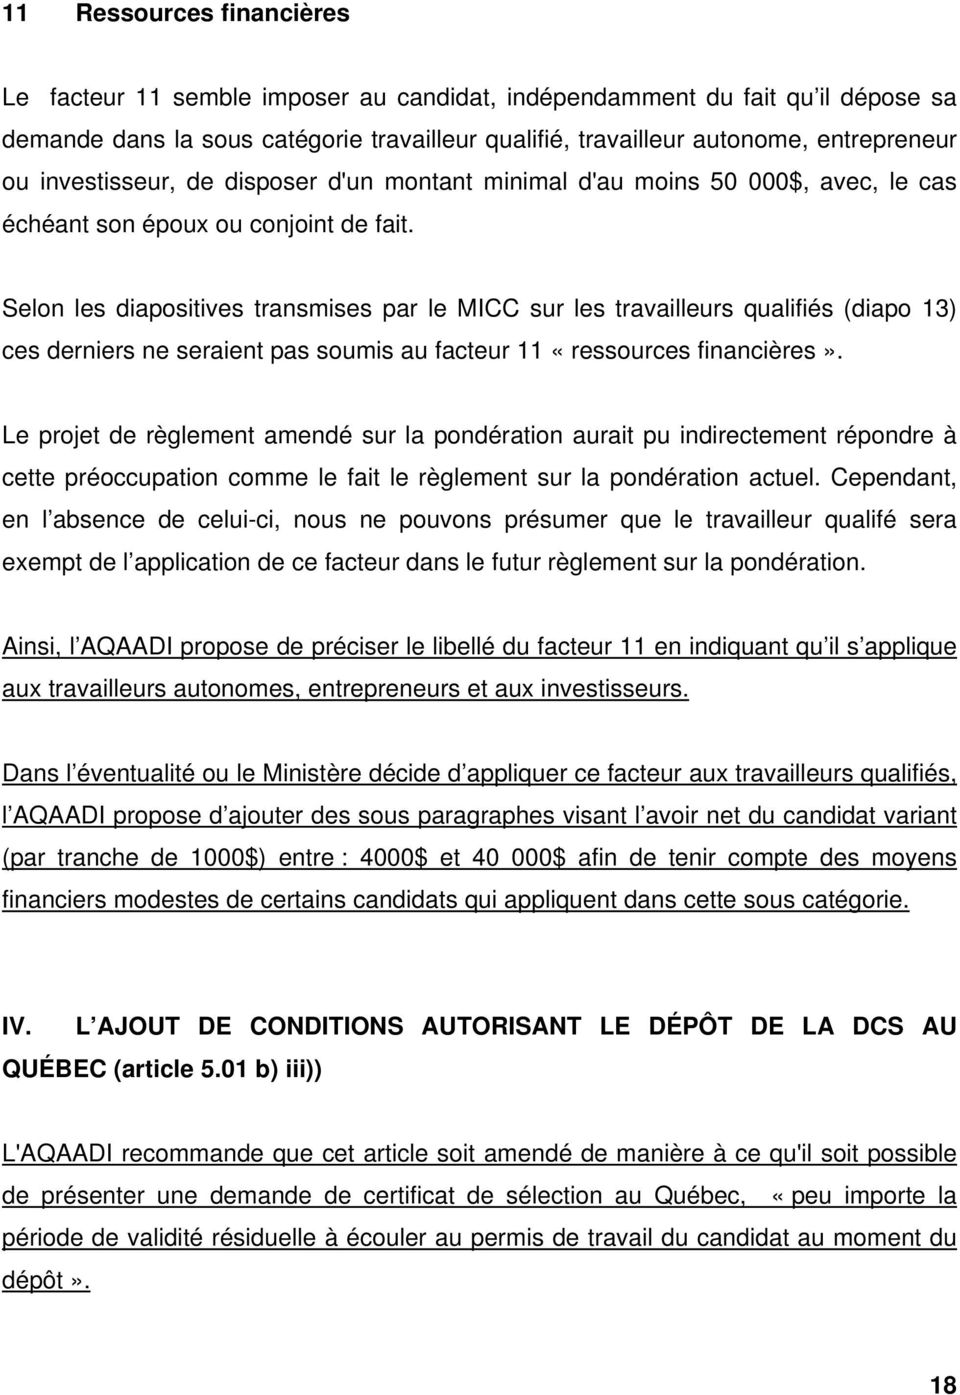 Selon les diapositives transmises par le MICC sur les travailleurs qualifiés (diapo 13) ces derniers ne seraient pas soumis au facteur 11 «ressources financières».